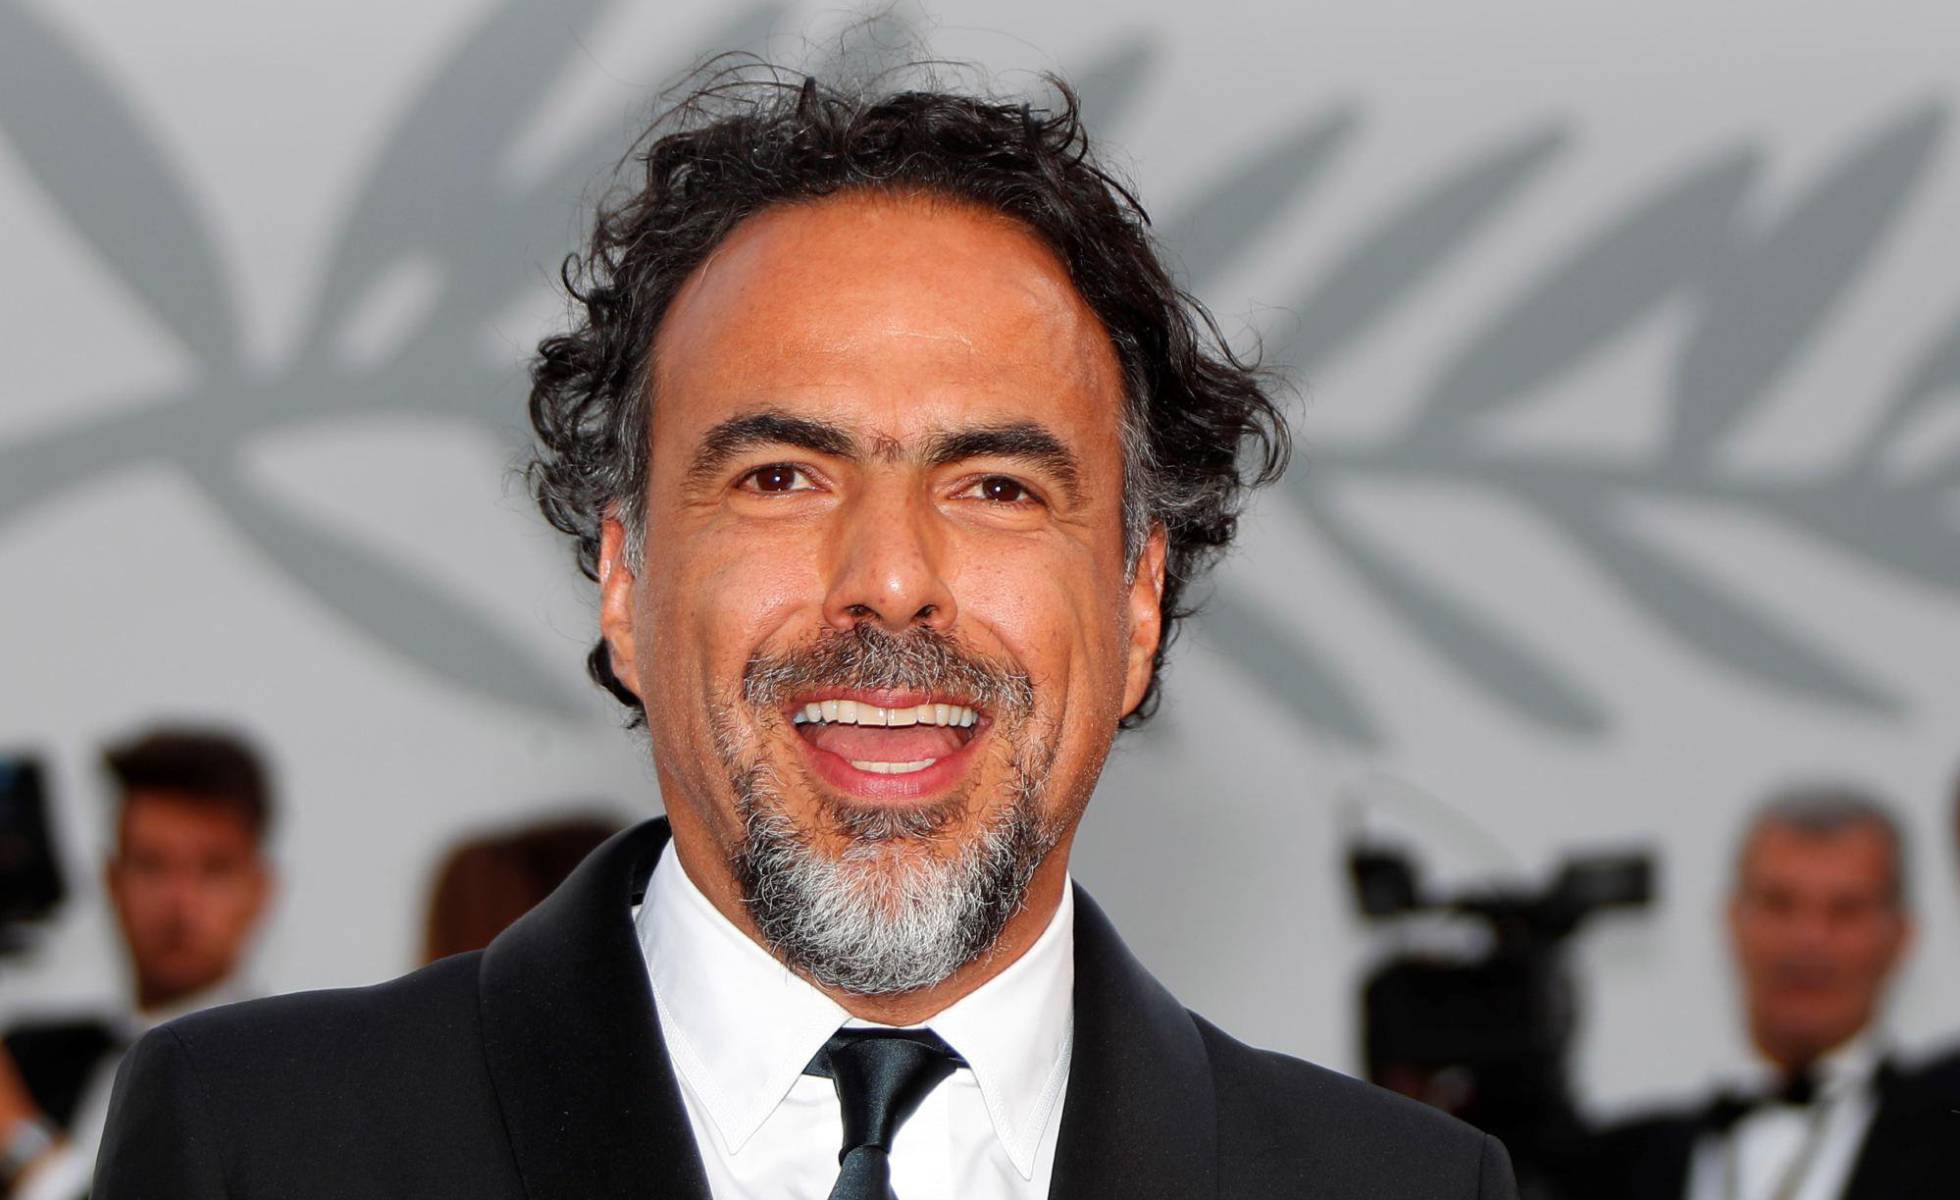 Biografía de Alejandro González Iñarritu corta y resumida ✏️